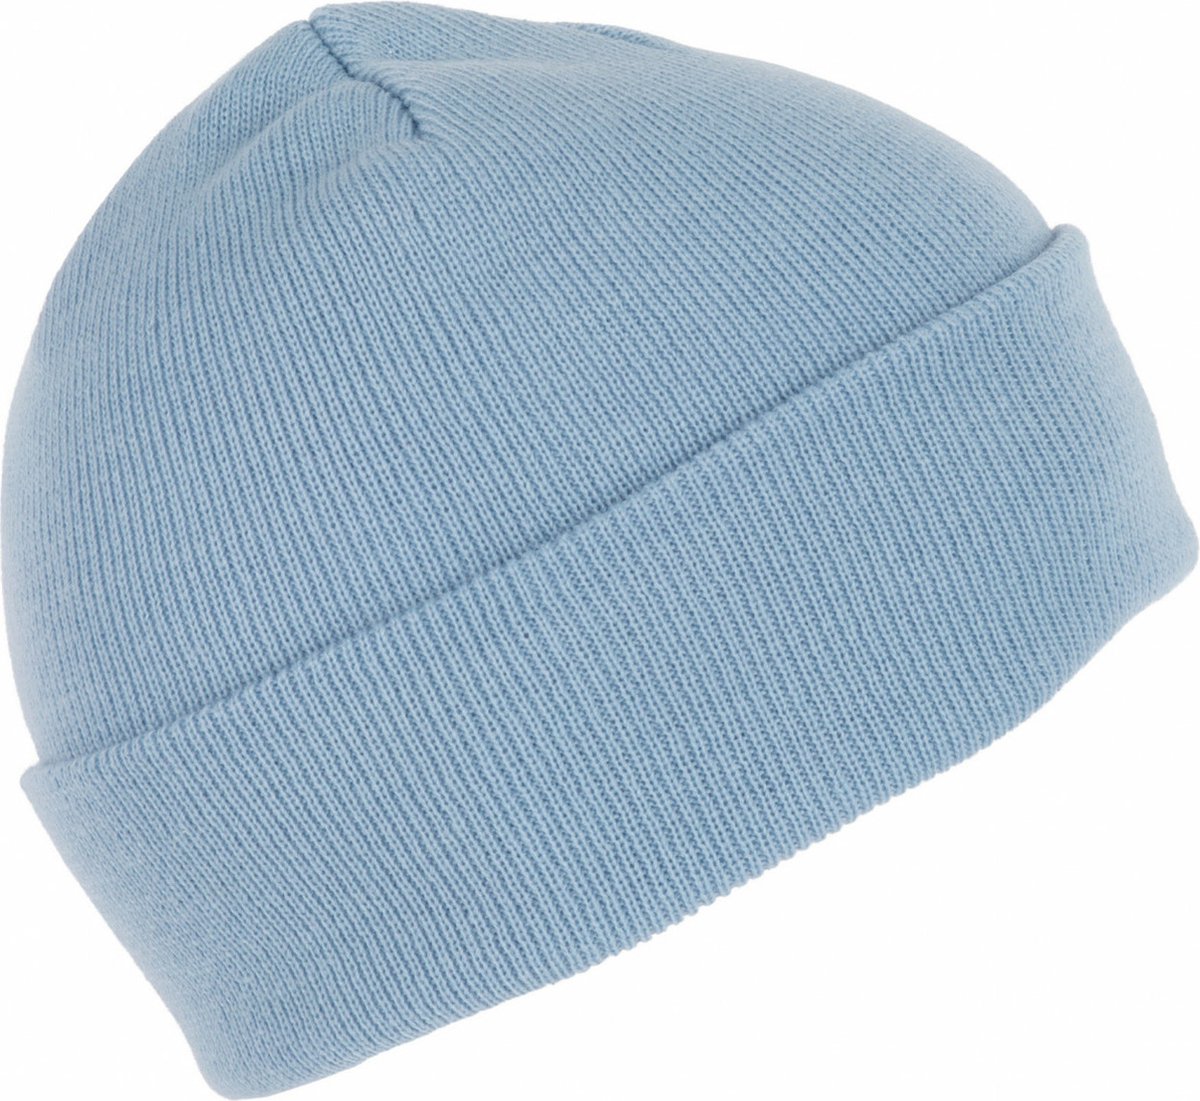 K-up Hats Wintermuts Beanie Yukon - lichtblauw - heren/dames - sterk/zacht/licht gebreid 100% Acryl - Dames/herenmuts